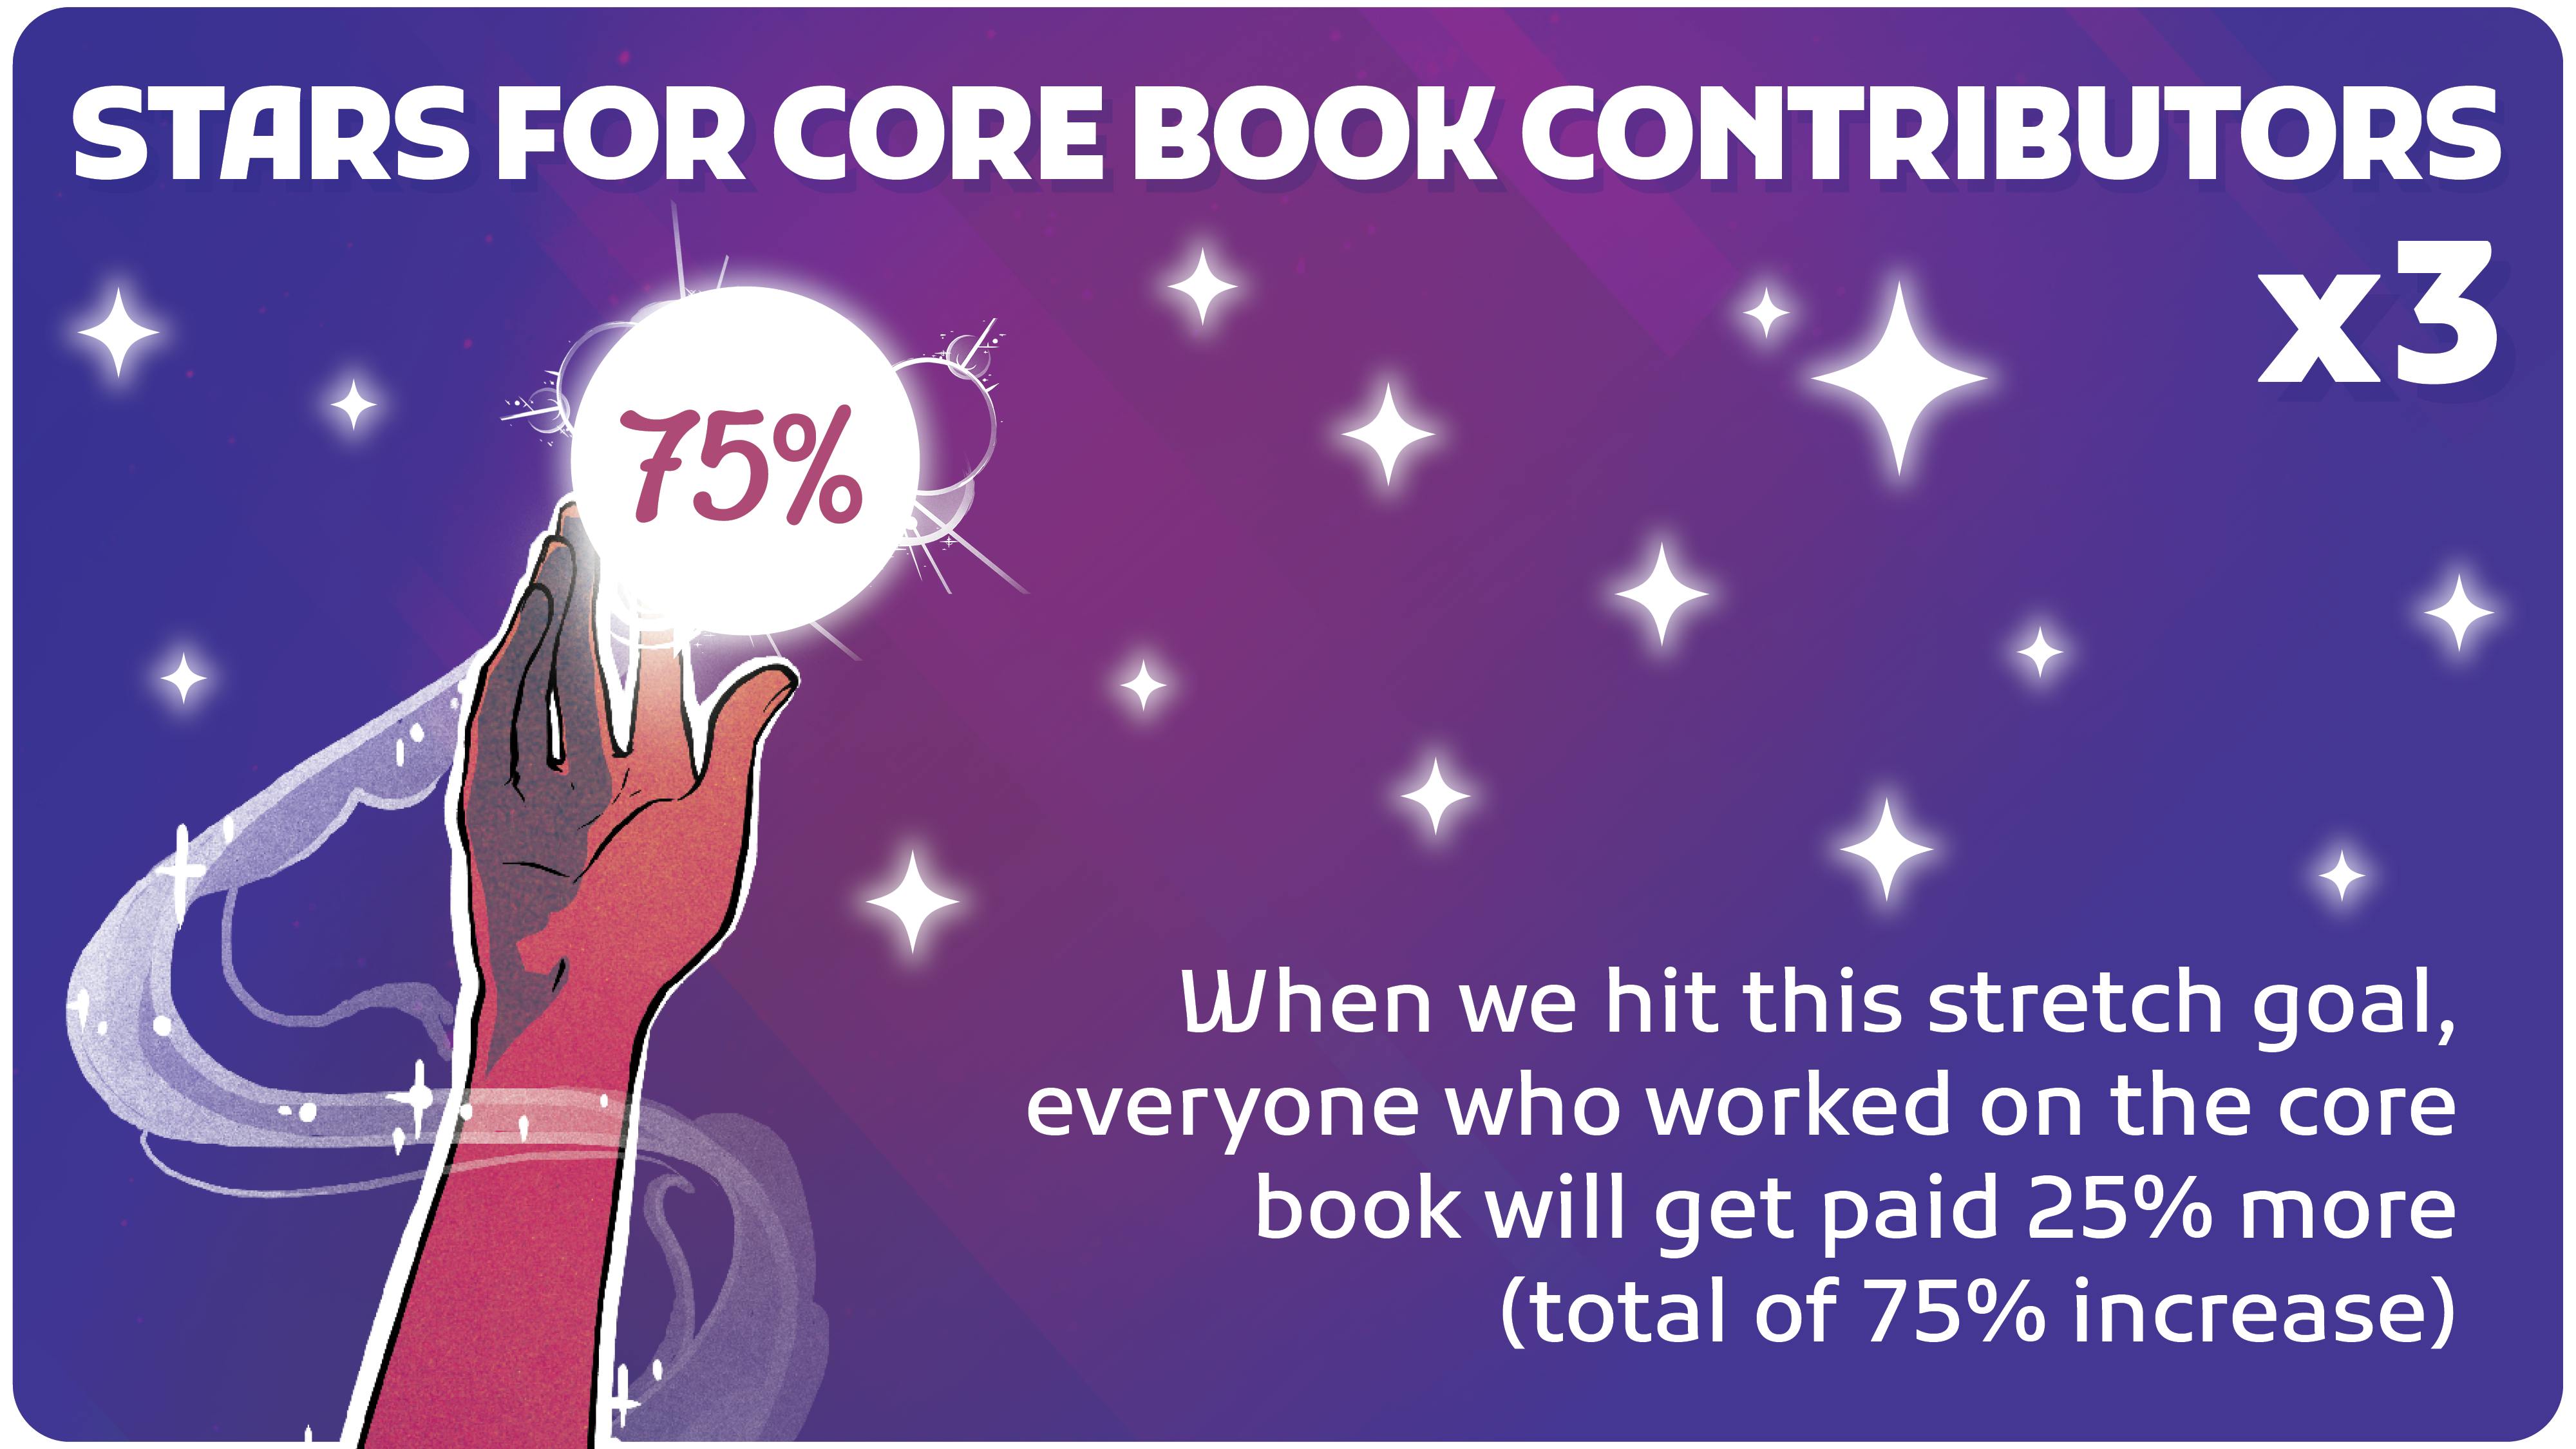 Stars for Core Book Contributors x3